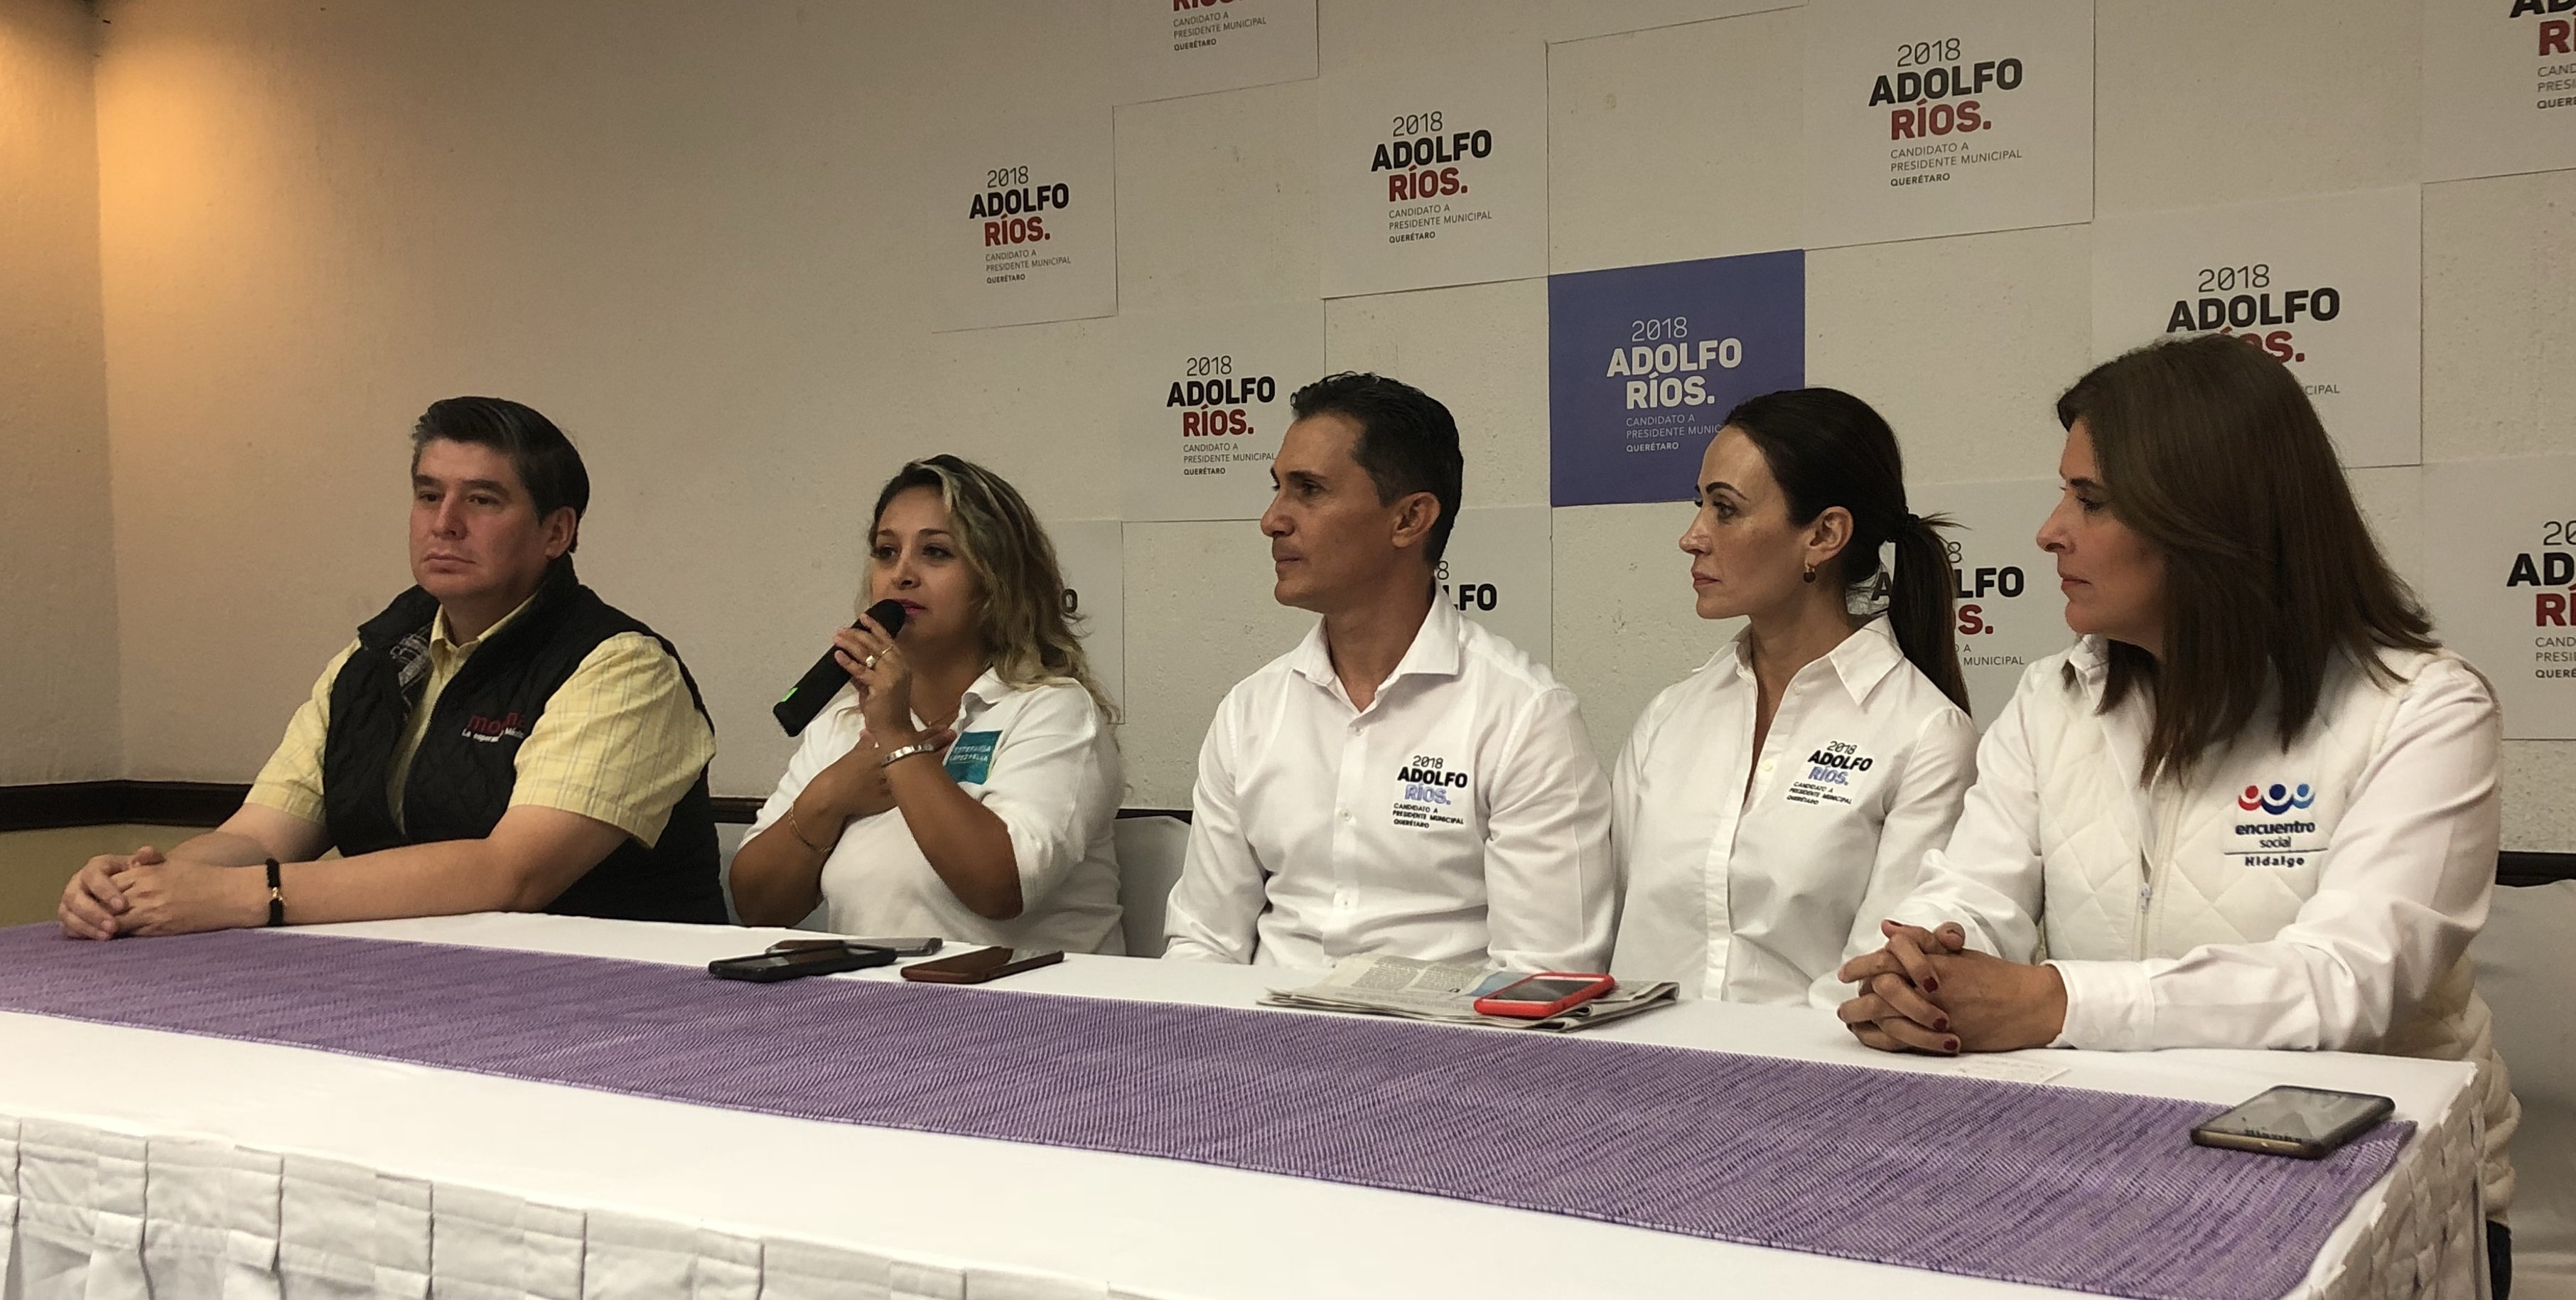  Se suma a la campaña de Adolfo Ríos candidata independiente al V distrito local